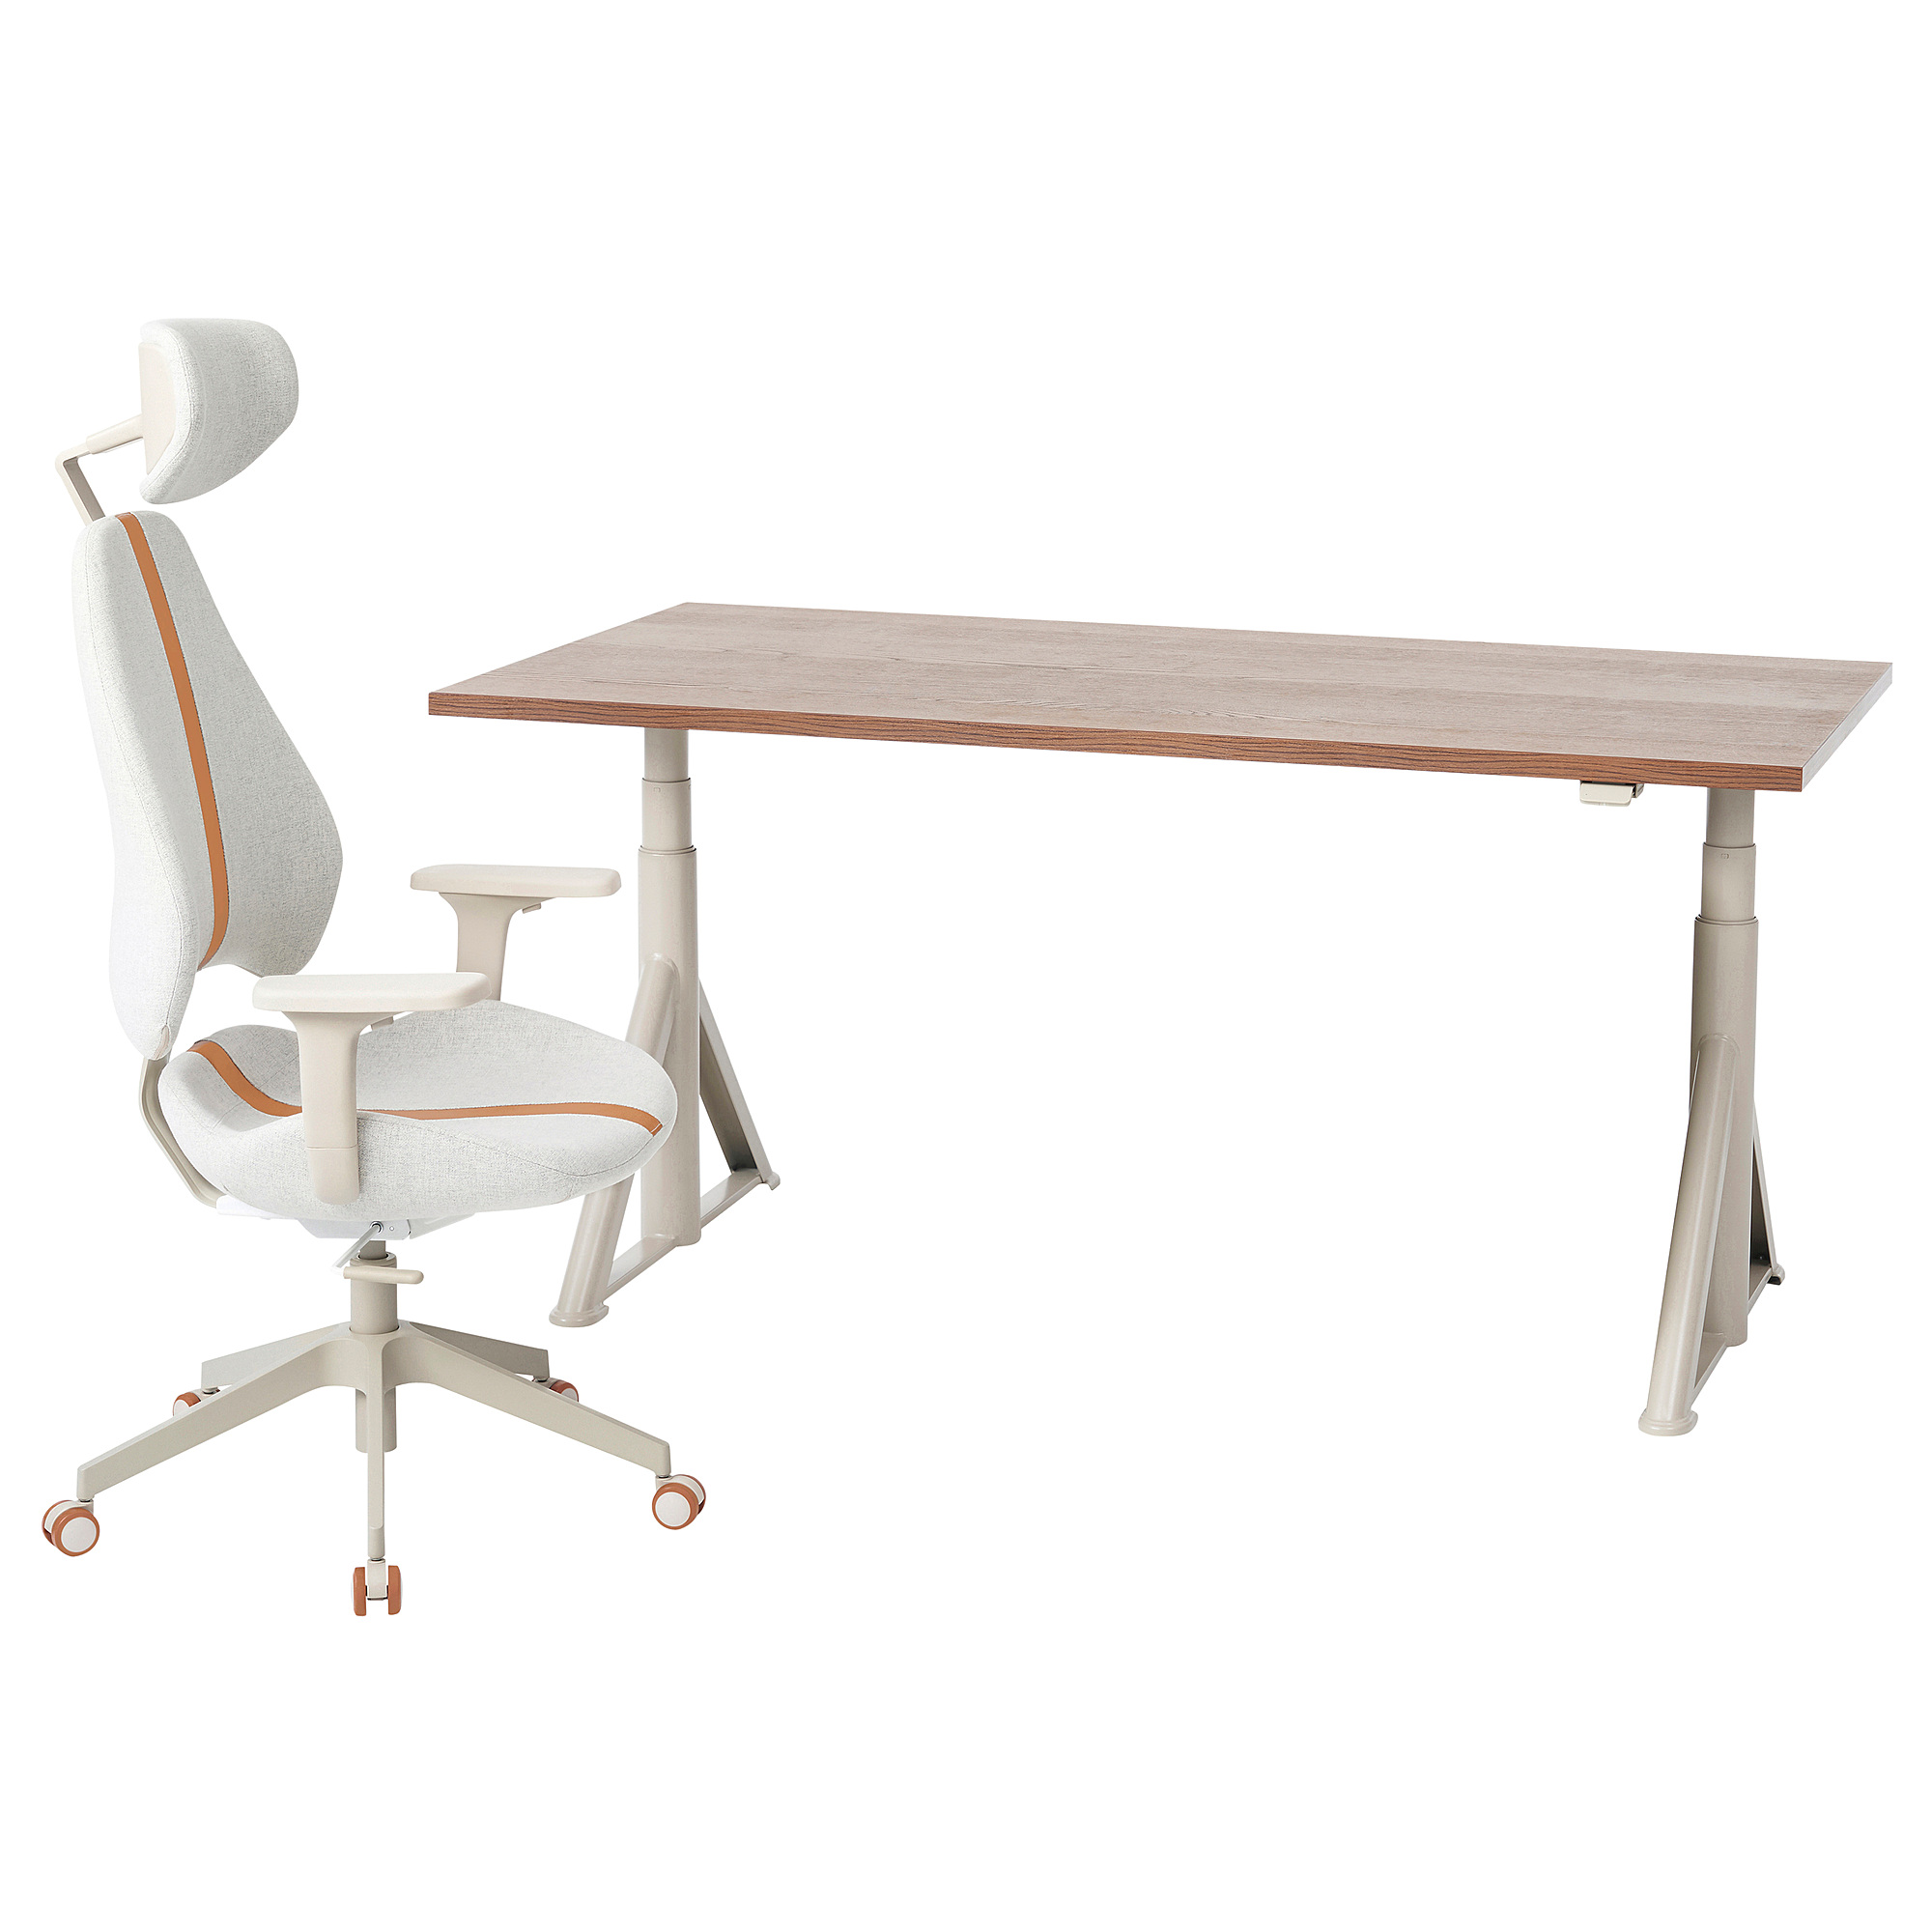 IDÅSEN/GRUPPSPEL desk and chair